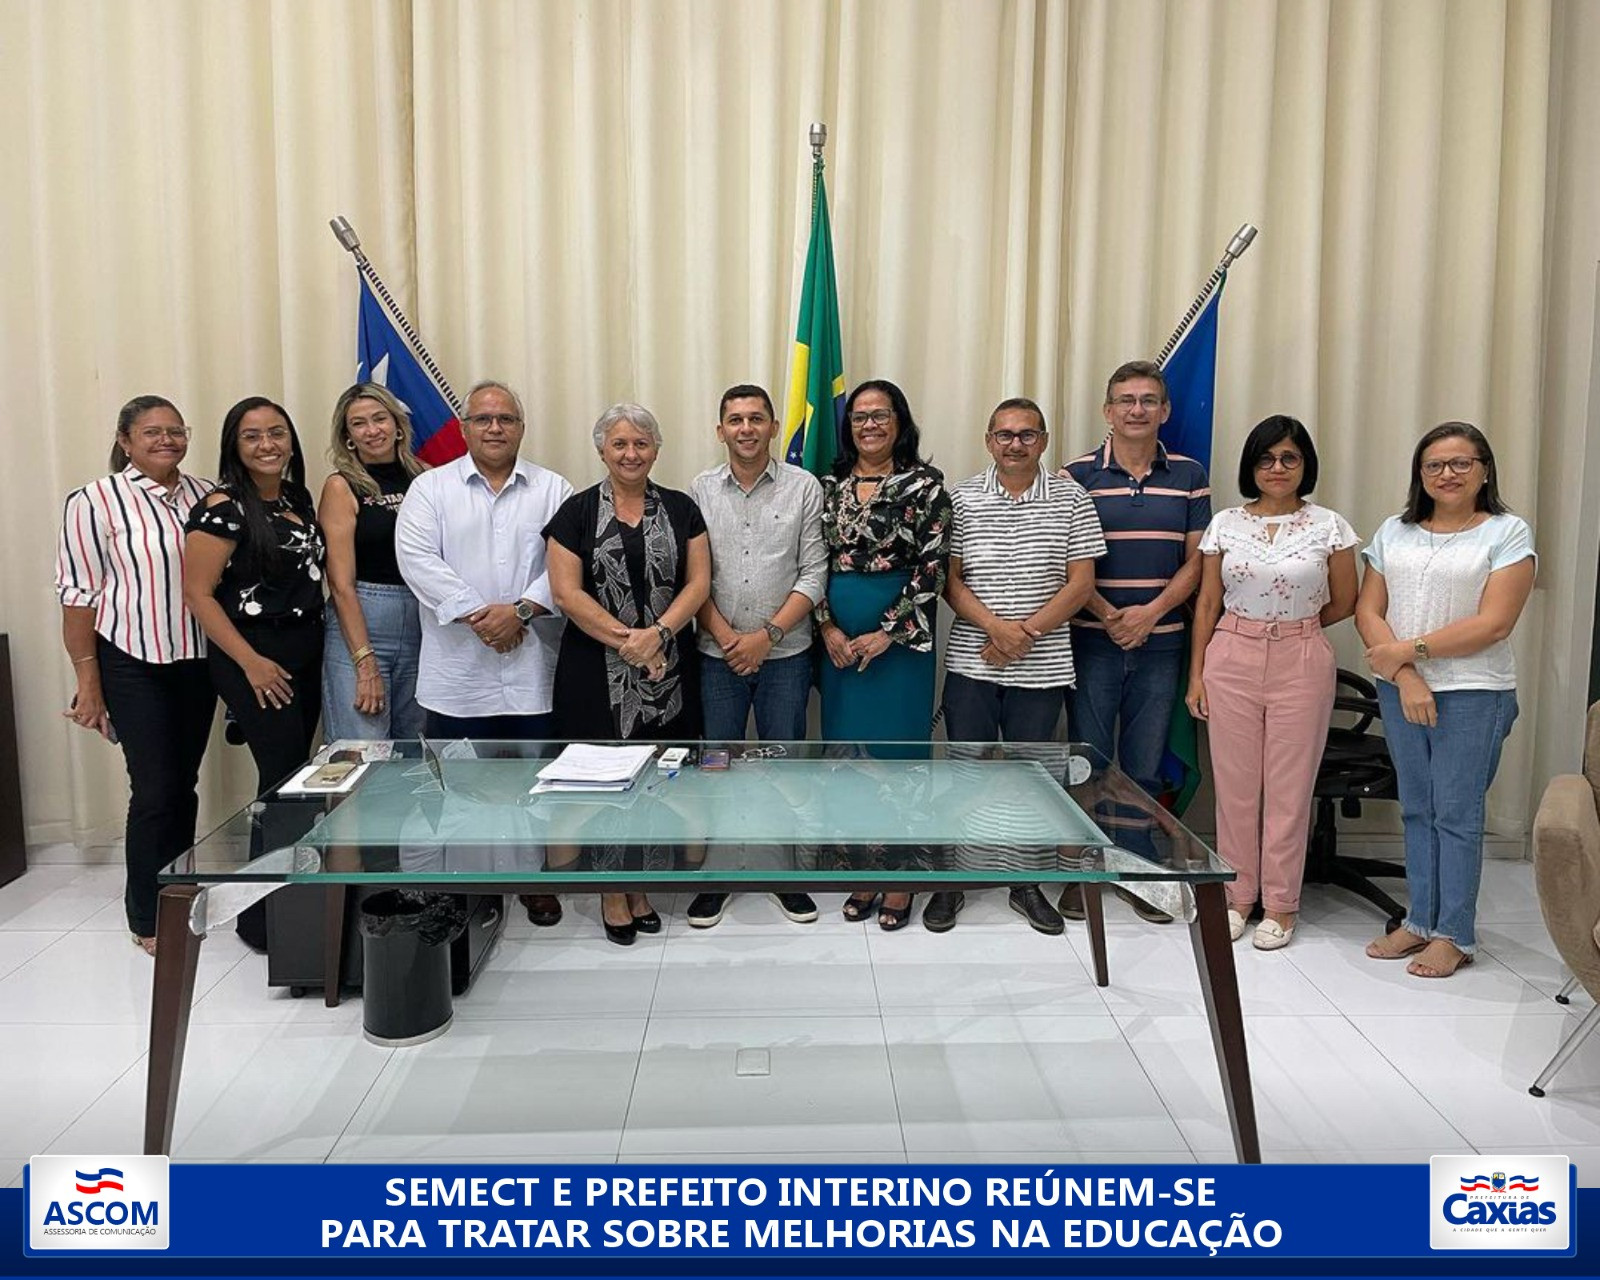 Semect trata sobre matrículas, busca ativa e melhorias na educação com prefeito interino de Caxias (MA)